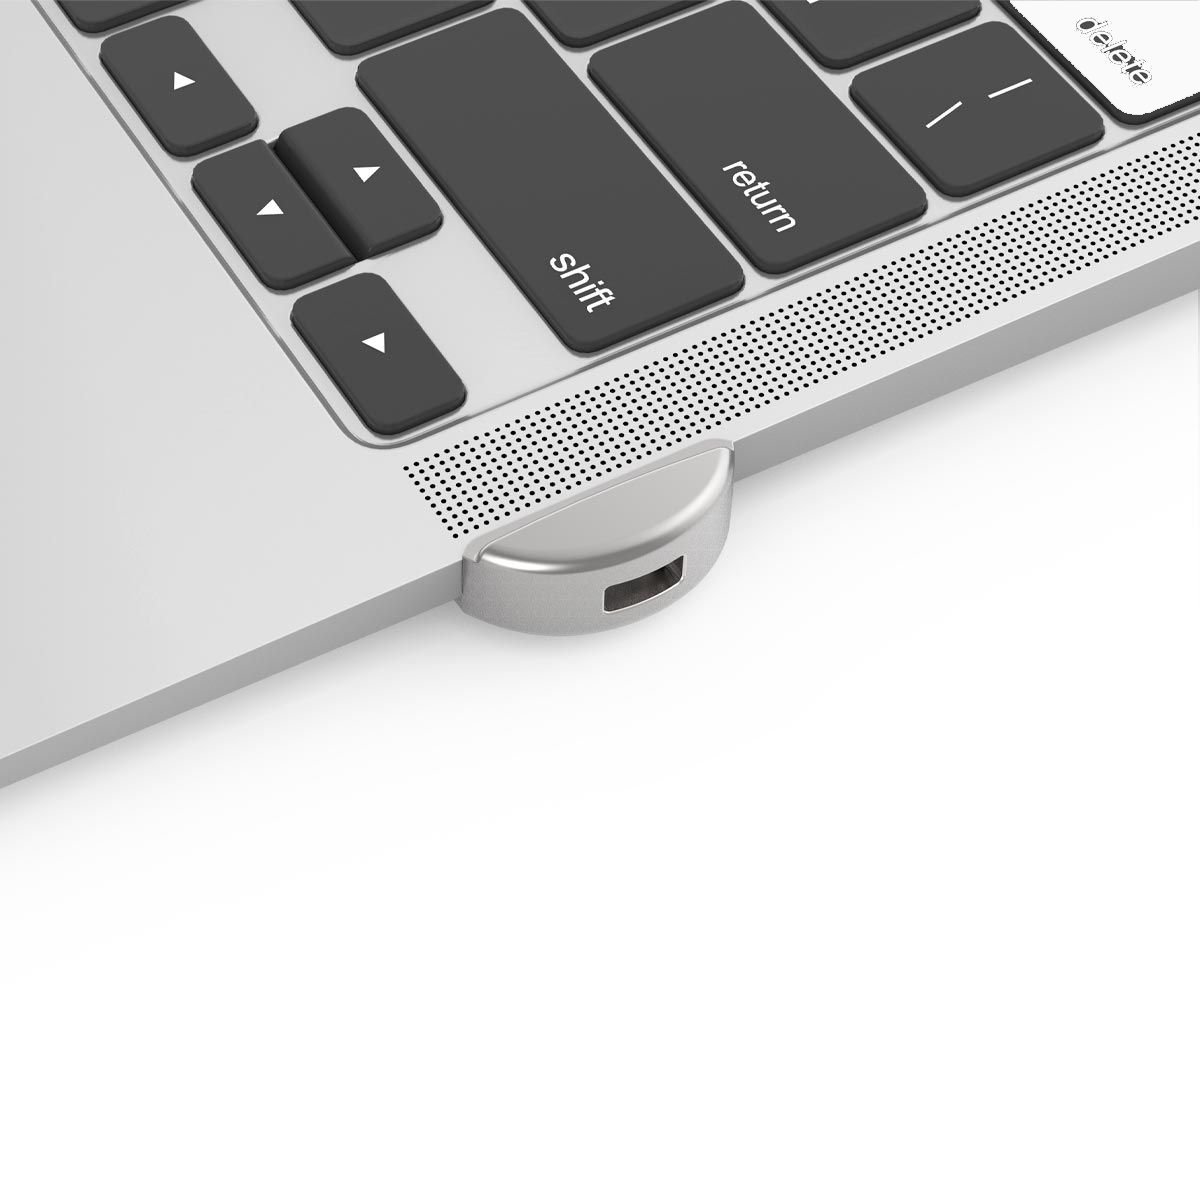 Maclocks MacBook Air Lock – The Ledge